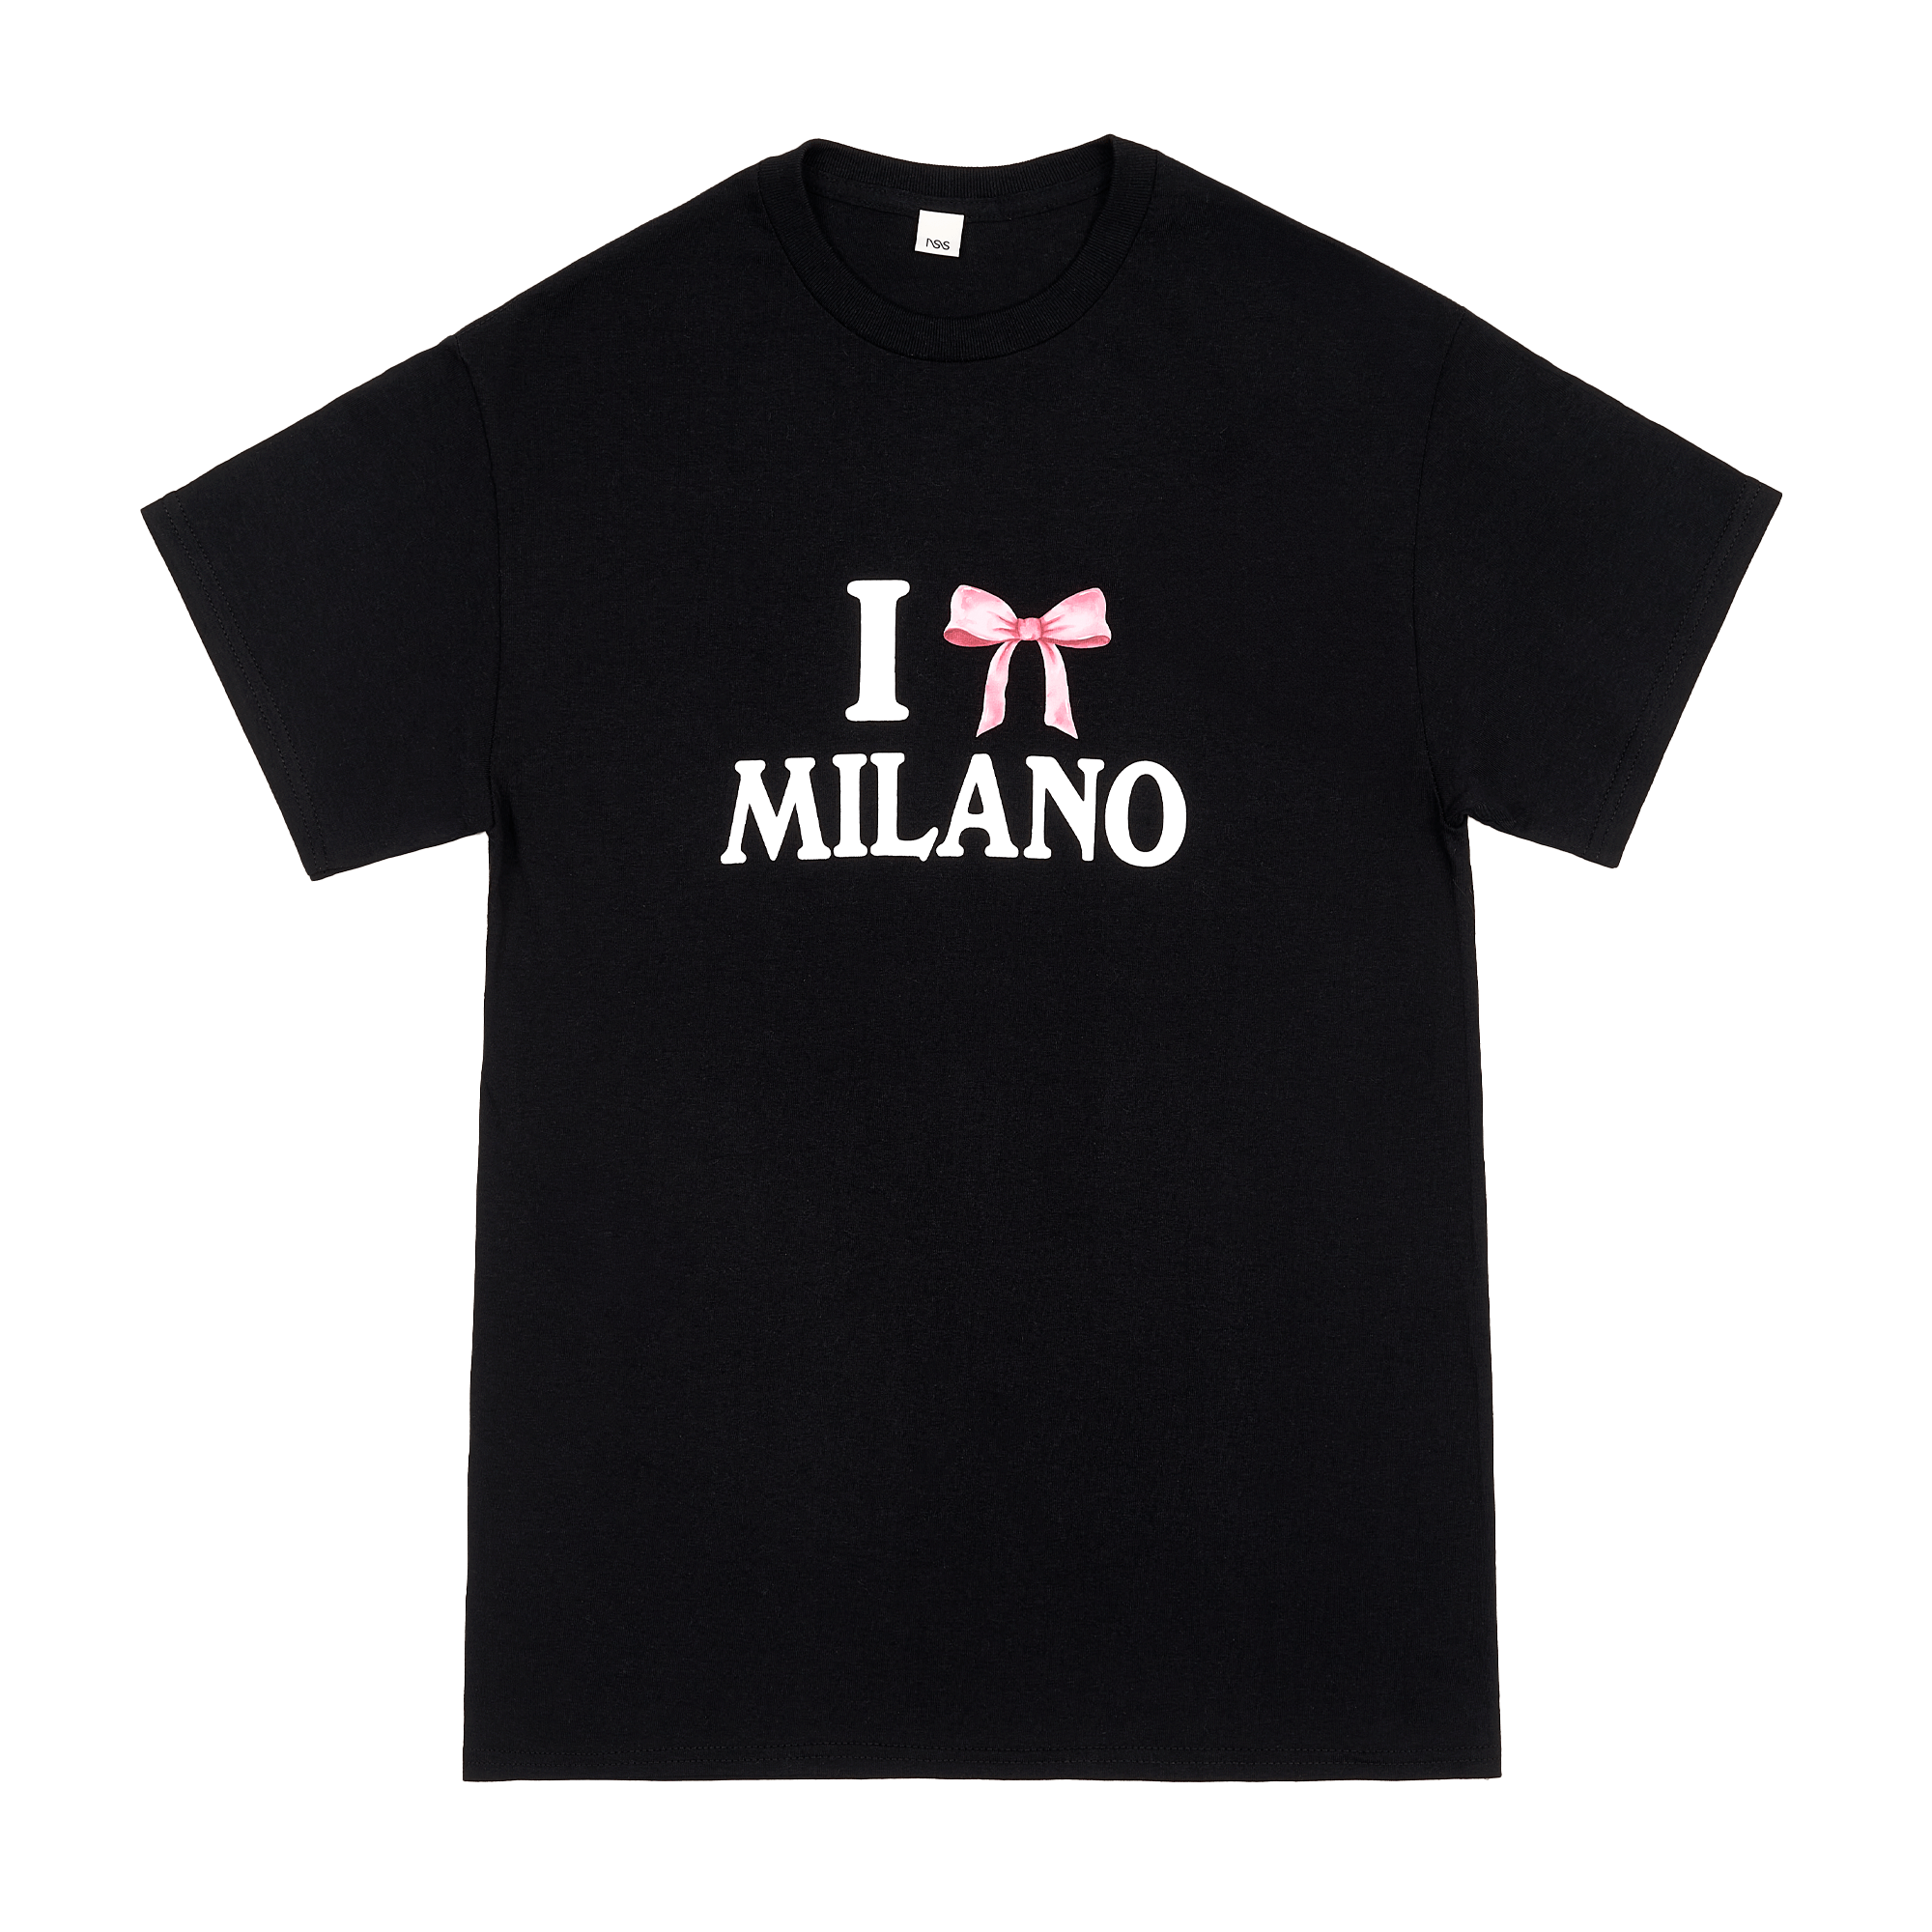 "I bow Milano" T-Shirt Black